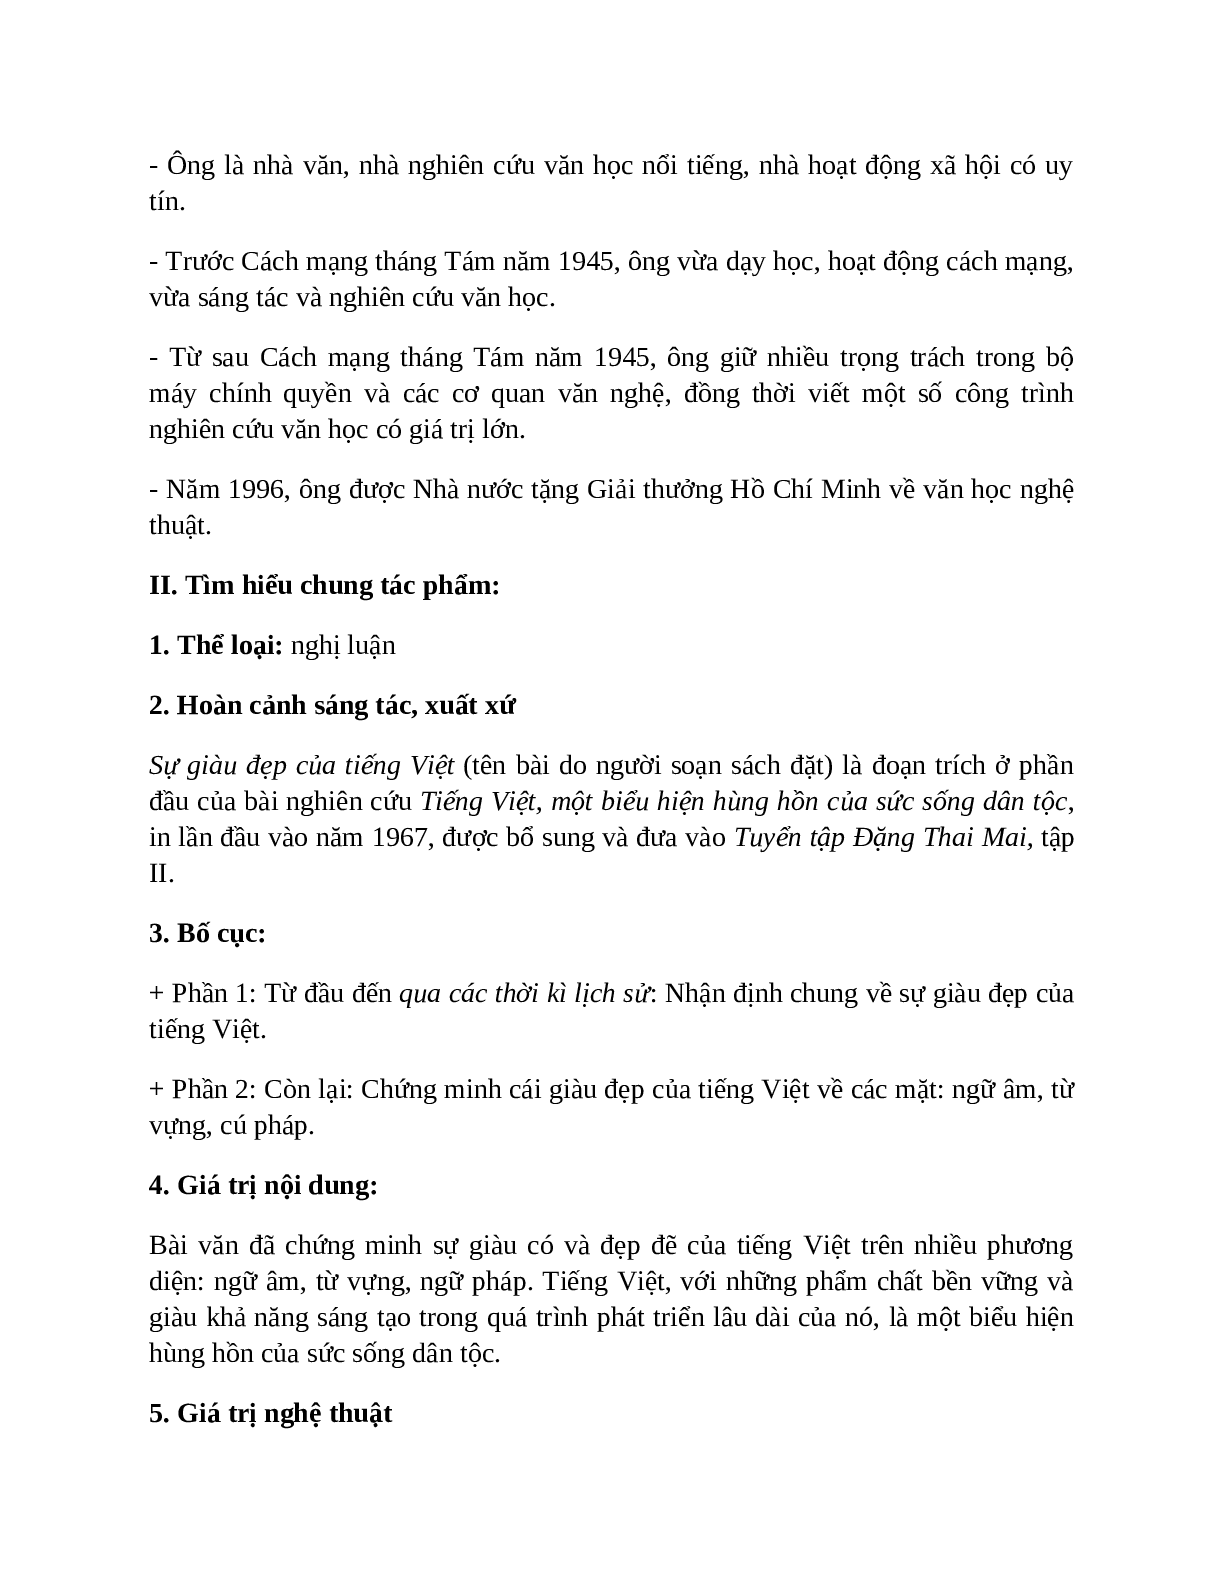 Sơ đồ tư duy bài Sự giàu đẹp của Tiếng Việt dễ nhớ, ngắn nhất - Ngữ văn lớp 7 (trang 2)